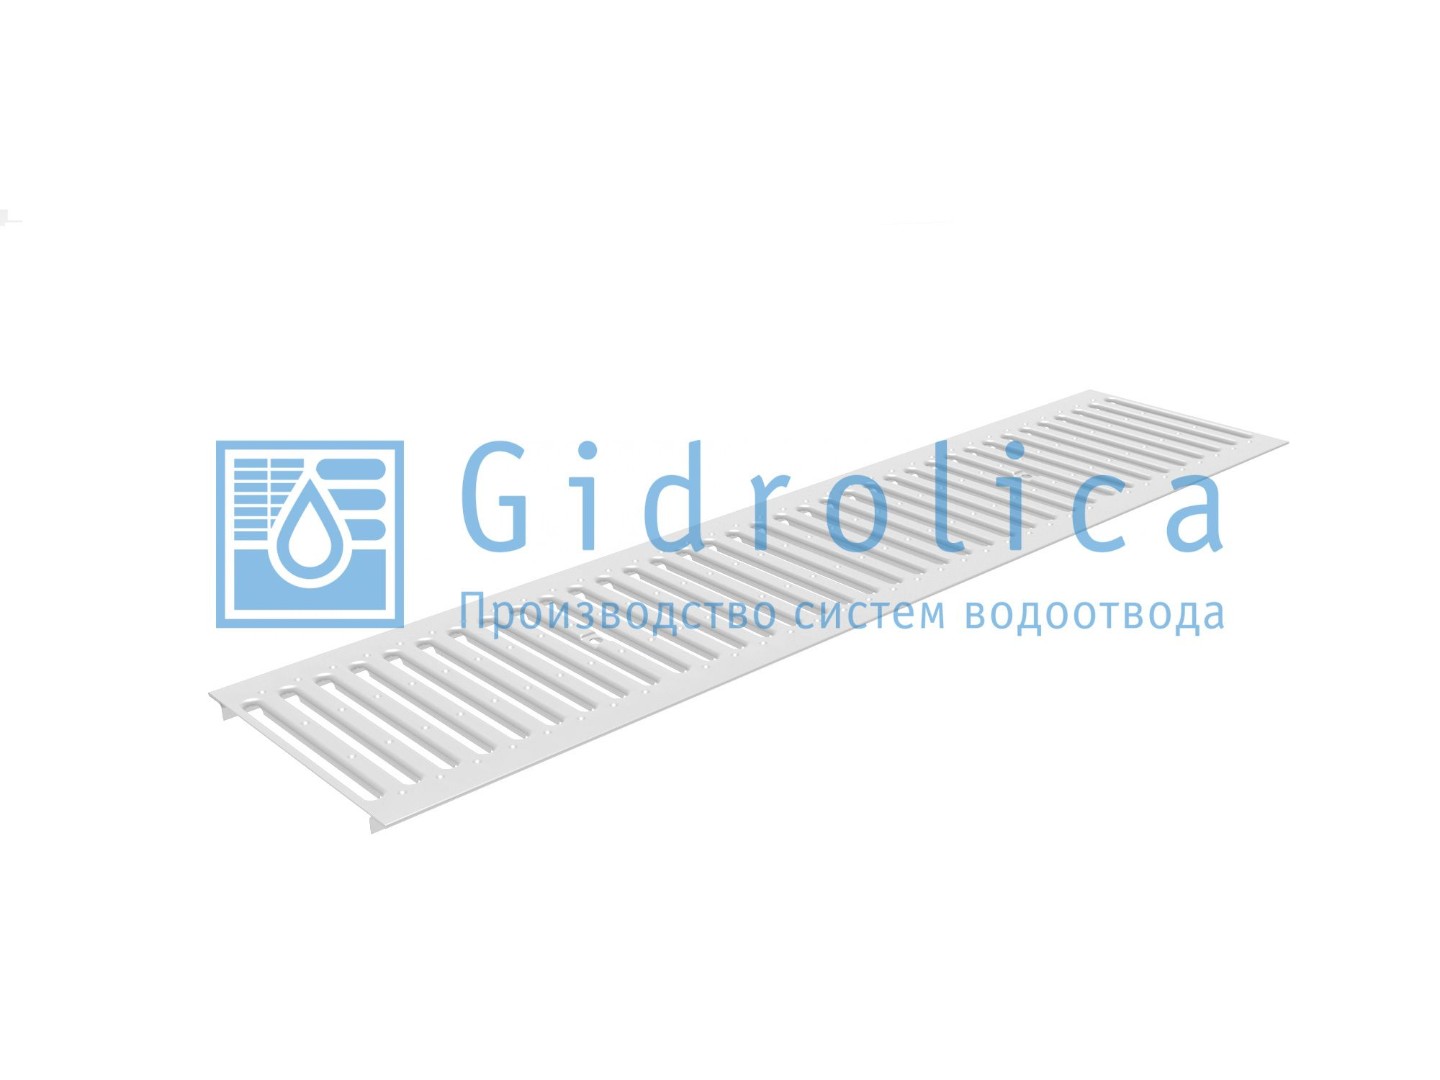 Решетка водоприемная Gidrolica Standart РВ -15.24.100 - штампованная стальная нержавеющая, кл. А15, арт. 523